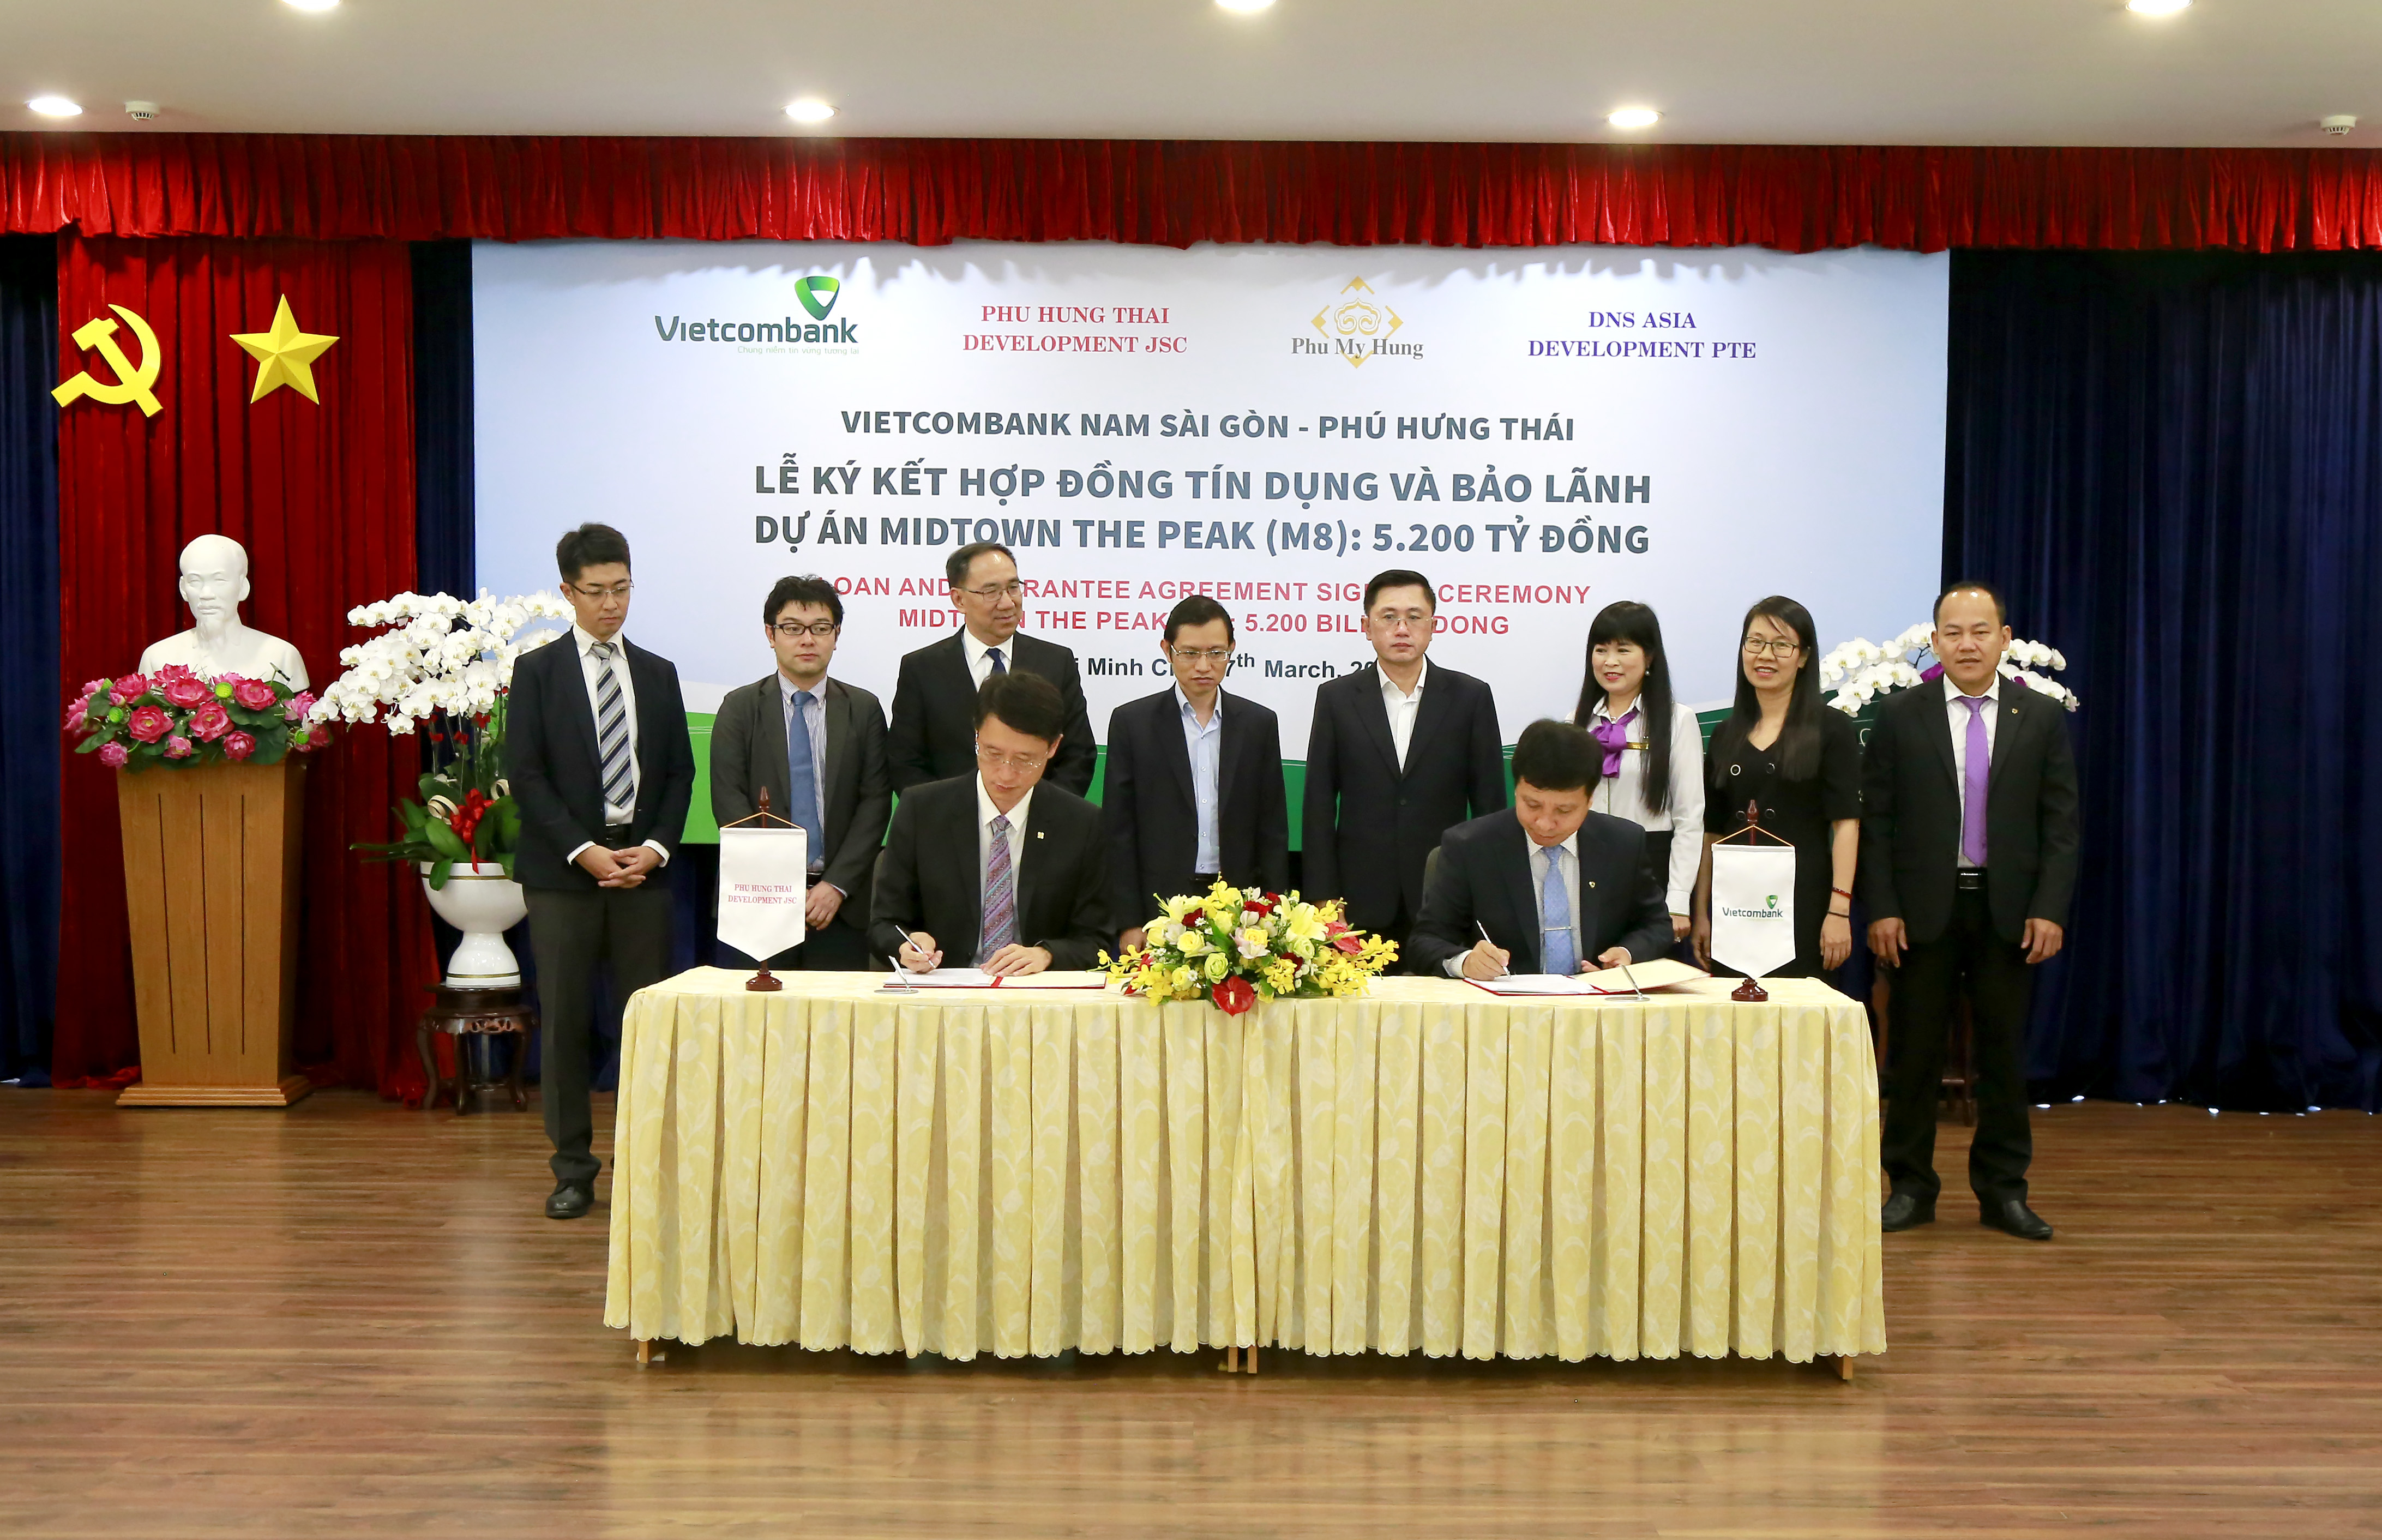 Vietcombank Nam Sài Gòn ký kết hợp đồng tín dụng và bảo lãnh Dự án Midtown The Peak